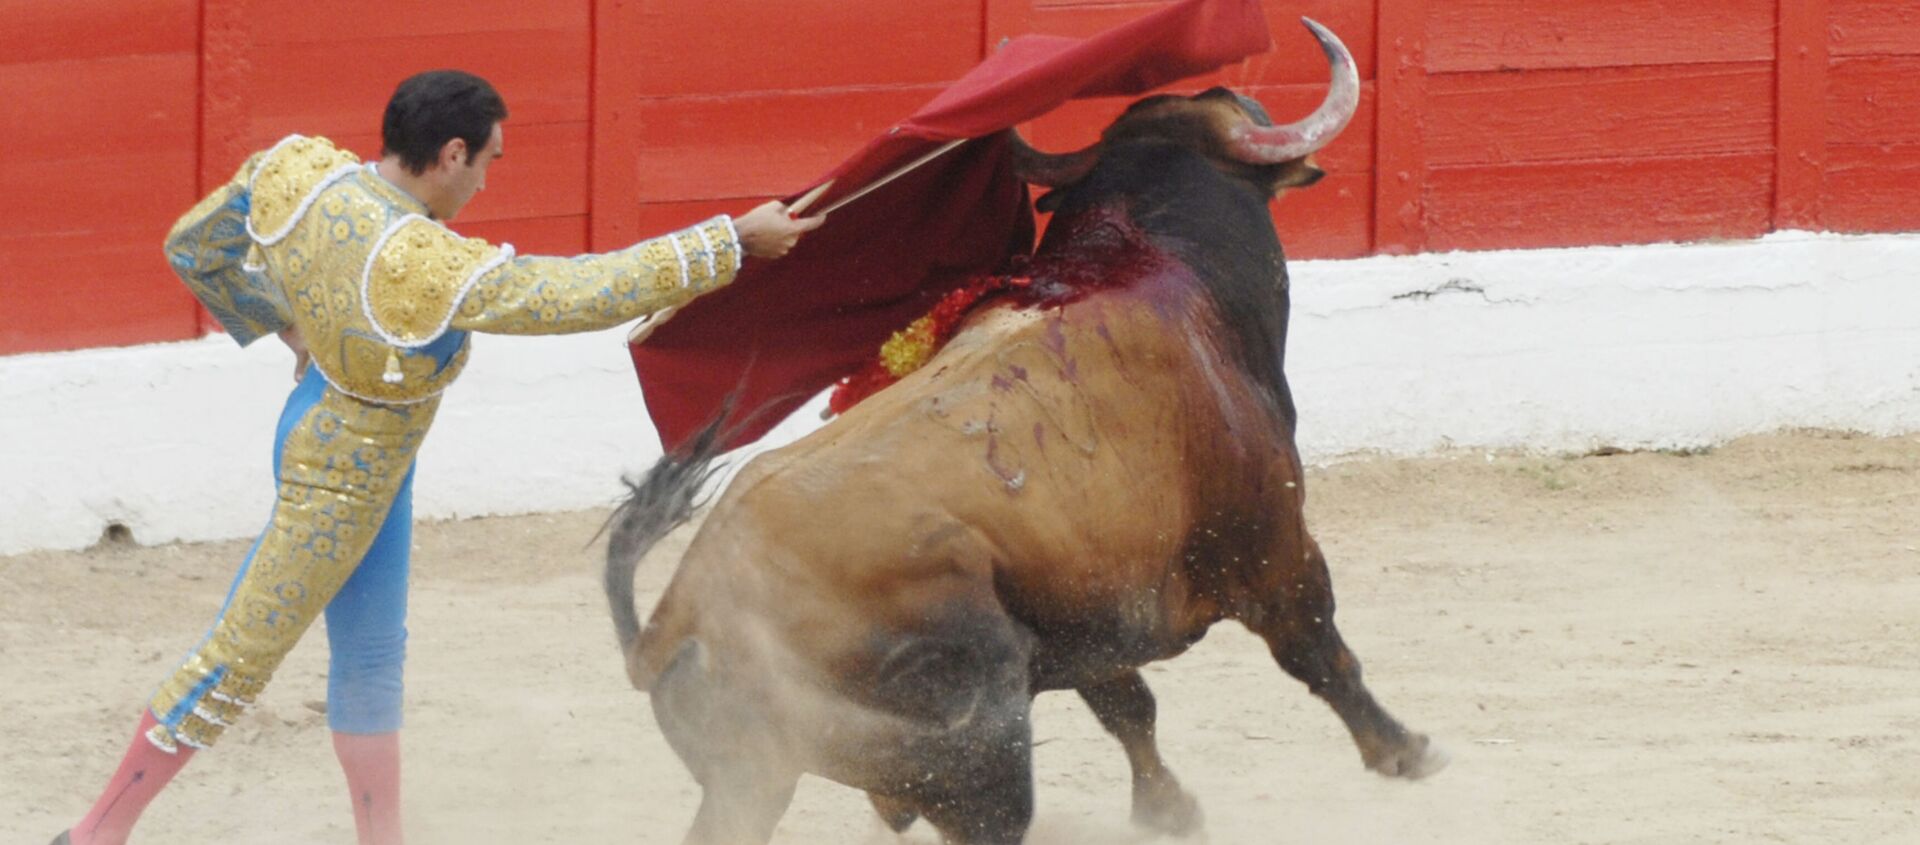 El torero Enrique Ponce toreando en la Plaza de Toros de Melilla (2011) - Sputnik Mundo, 1920, 07.08.2020